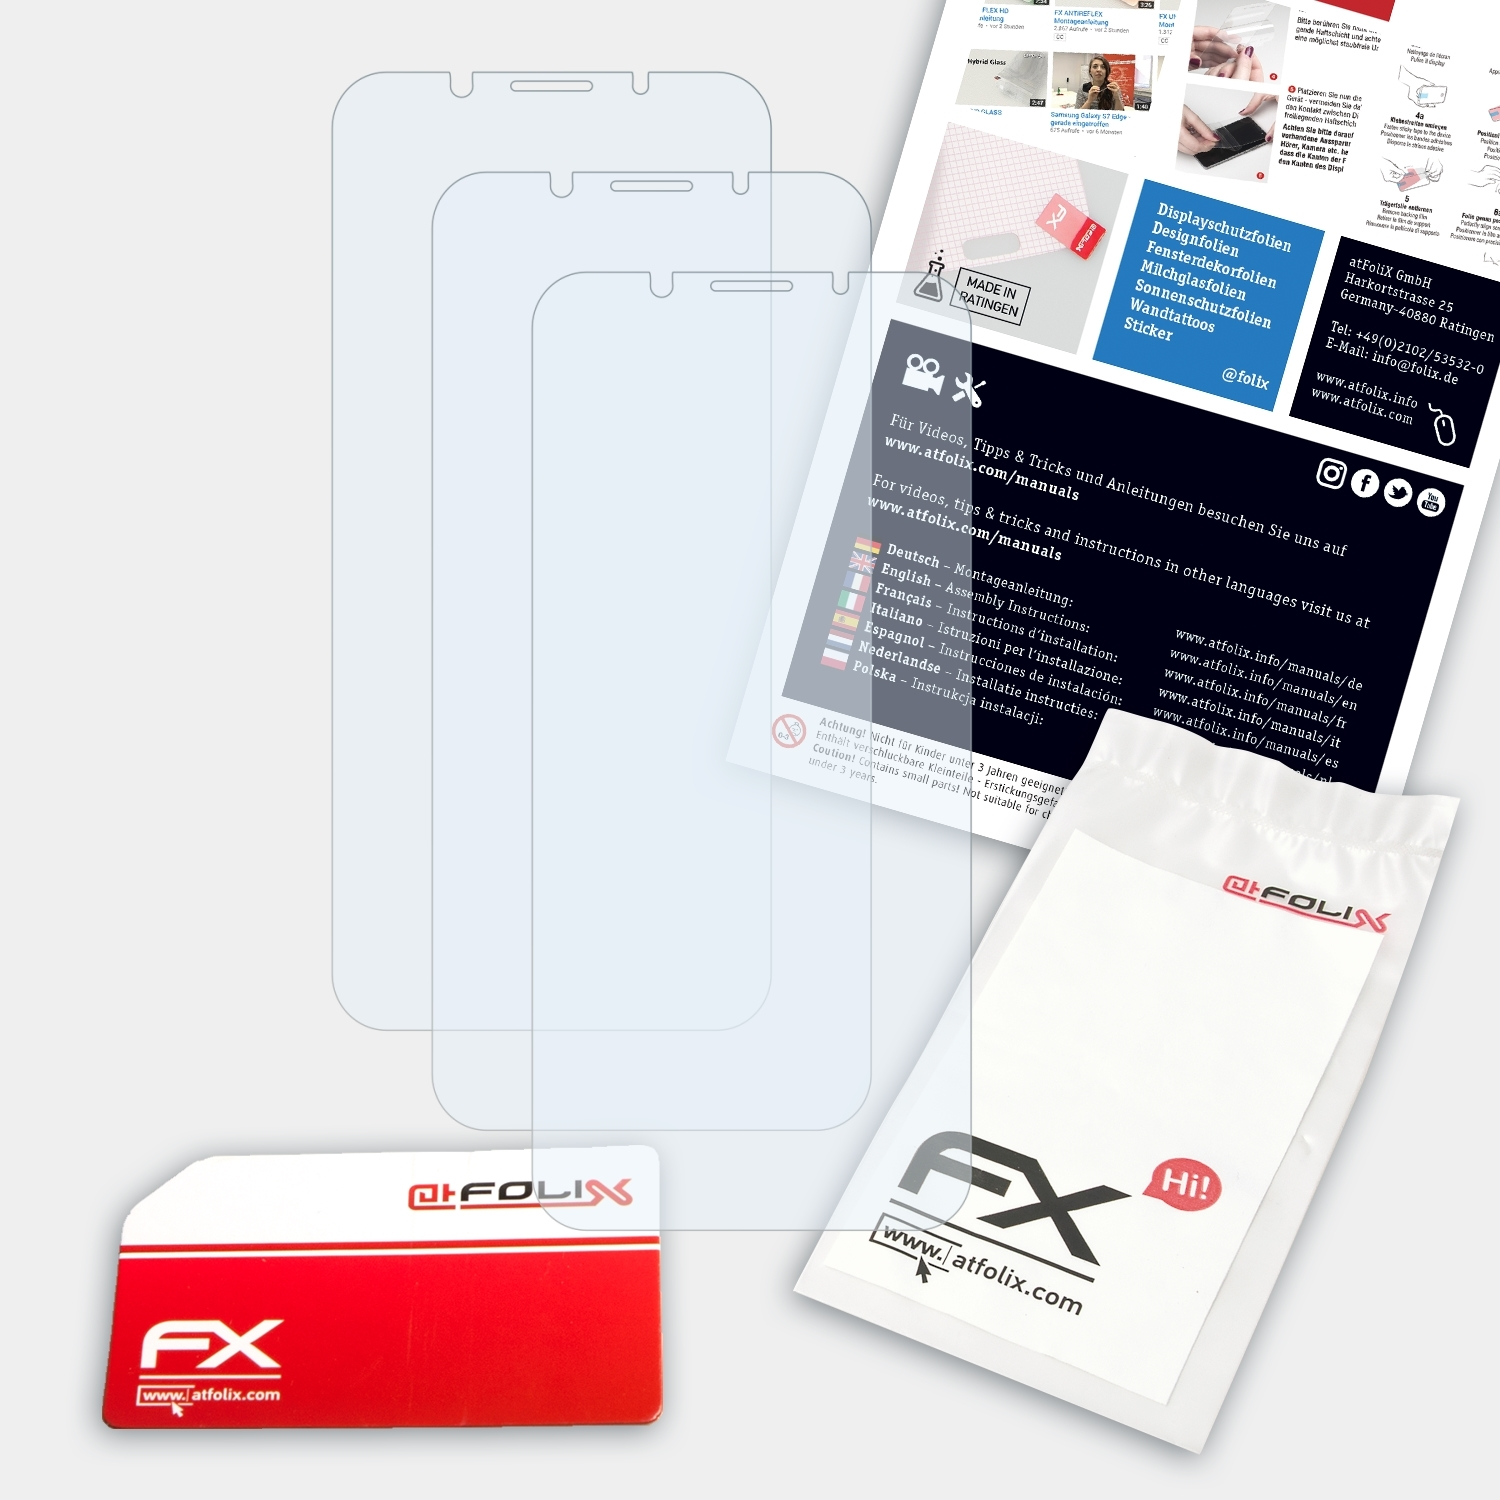 3x ATFOLIX F5) FX-Clear Oppo Displayschutz(für